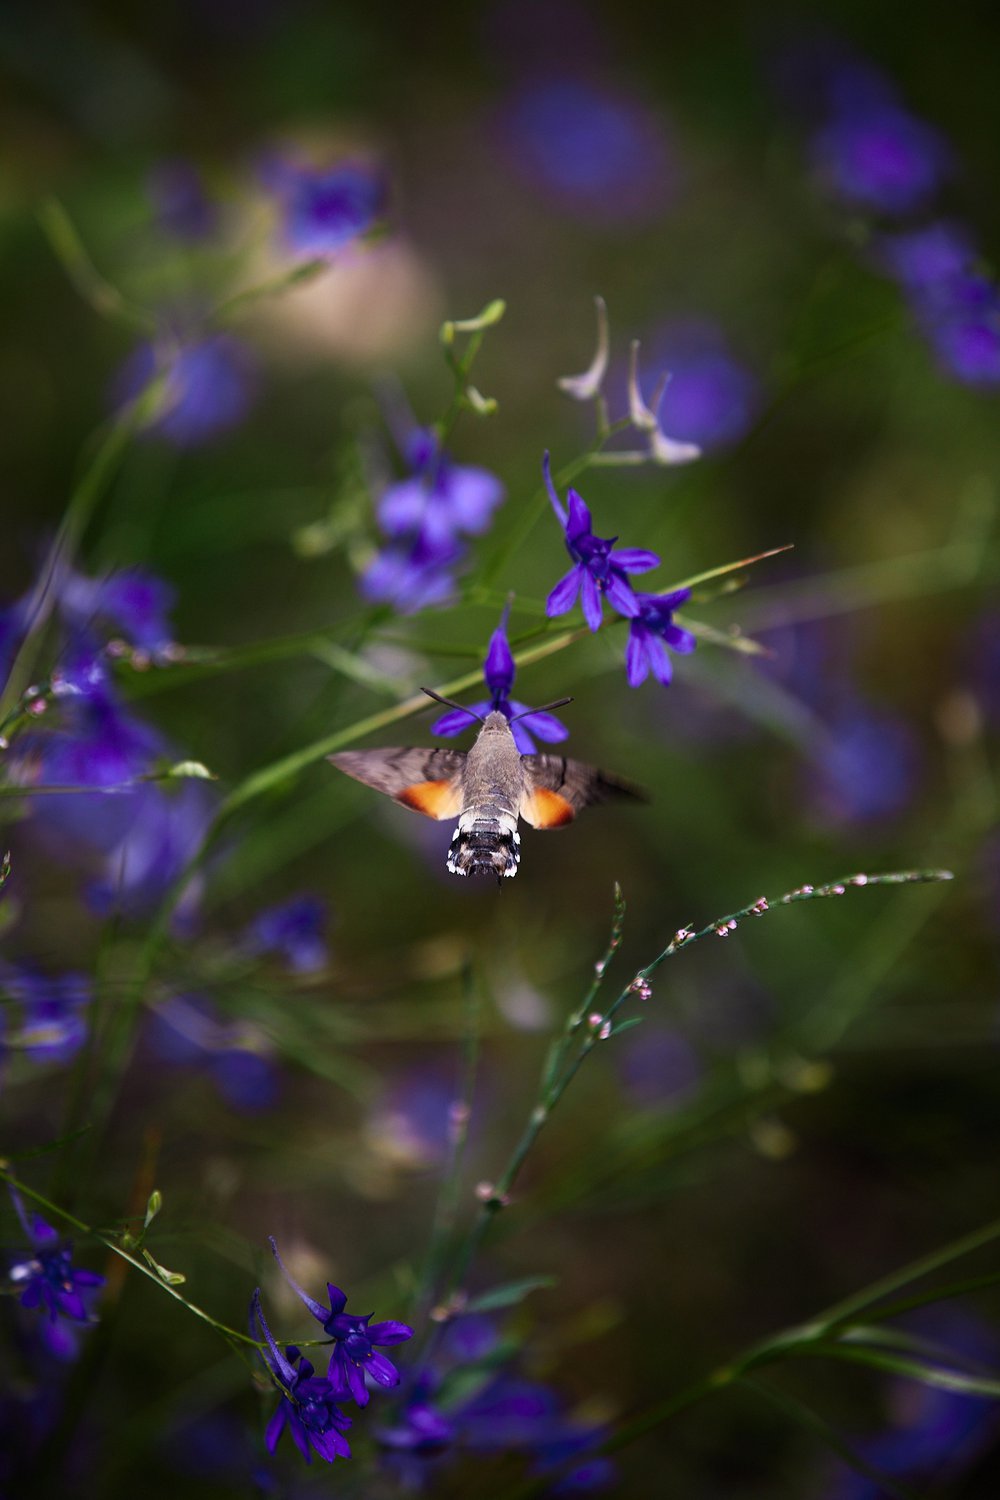 Языкан обыкновенный — бабочка из семейства бражников